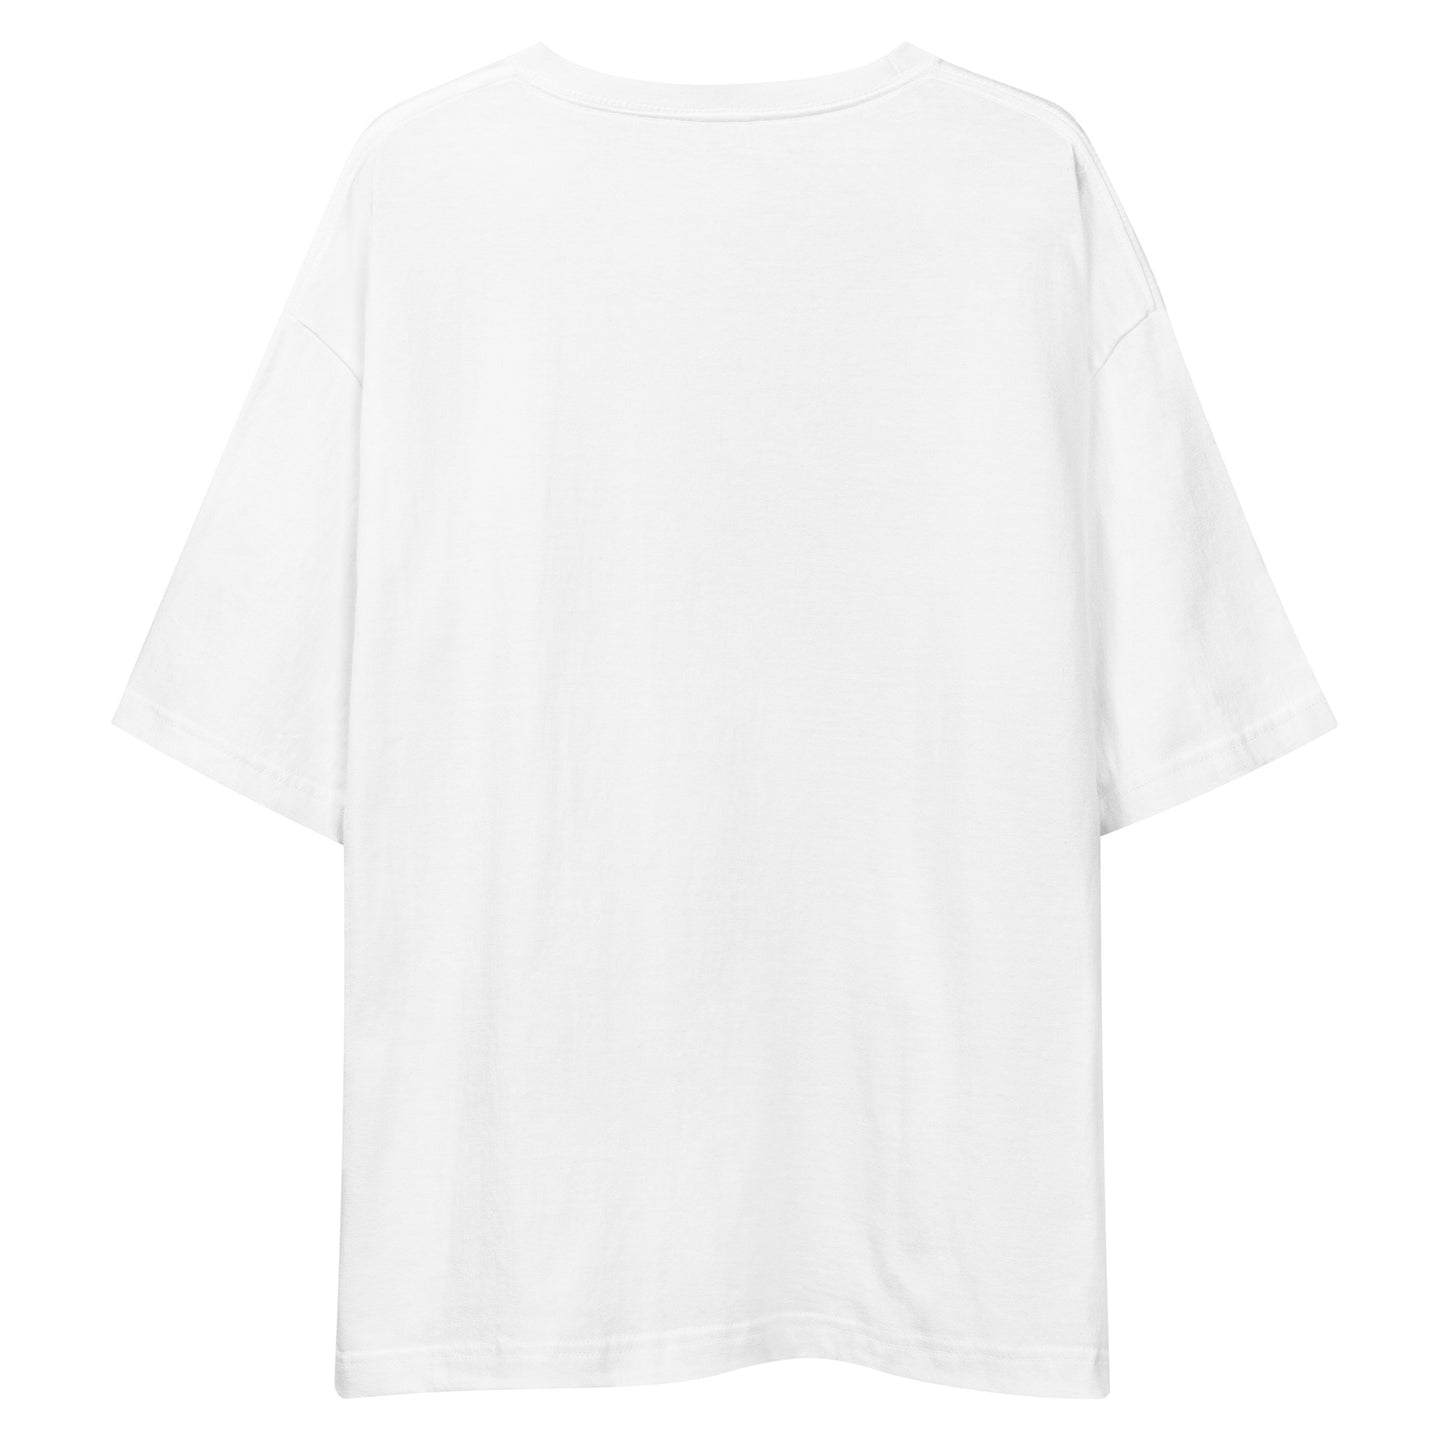 G205 - T-shirt/Oversized (Cheer : White/Gray)